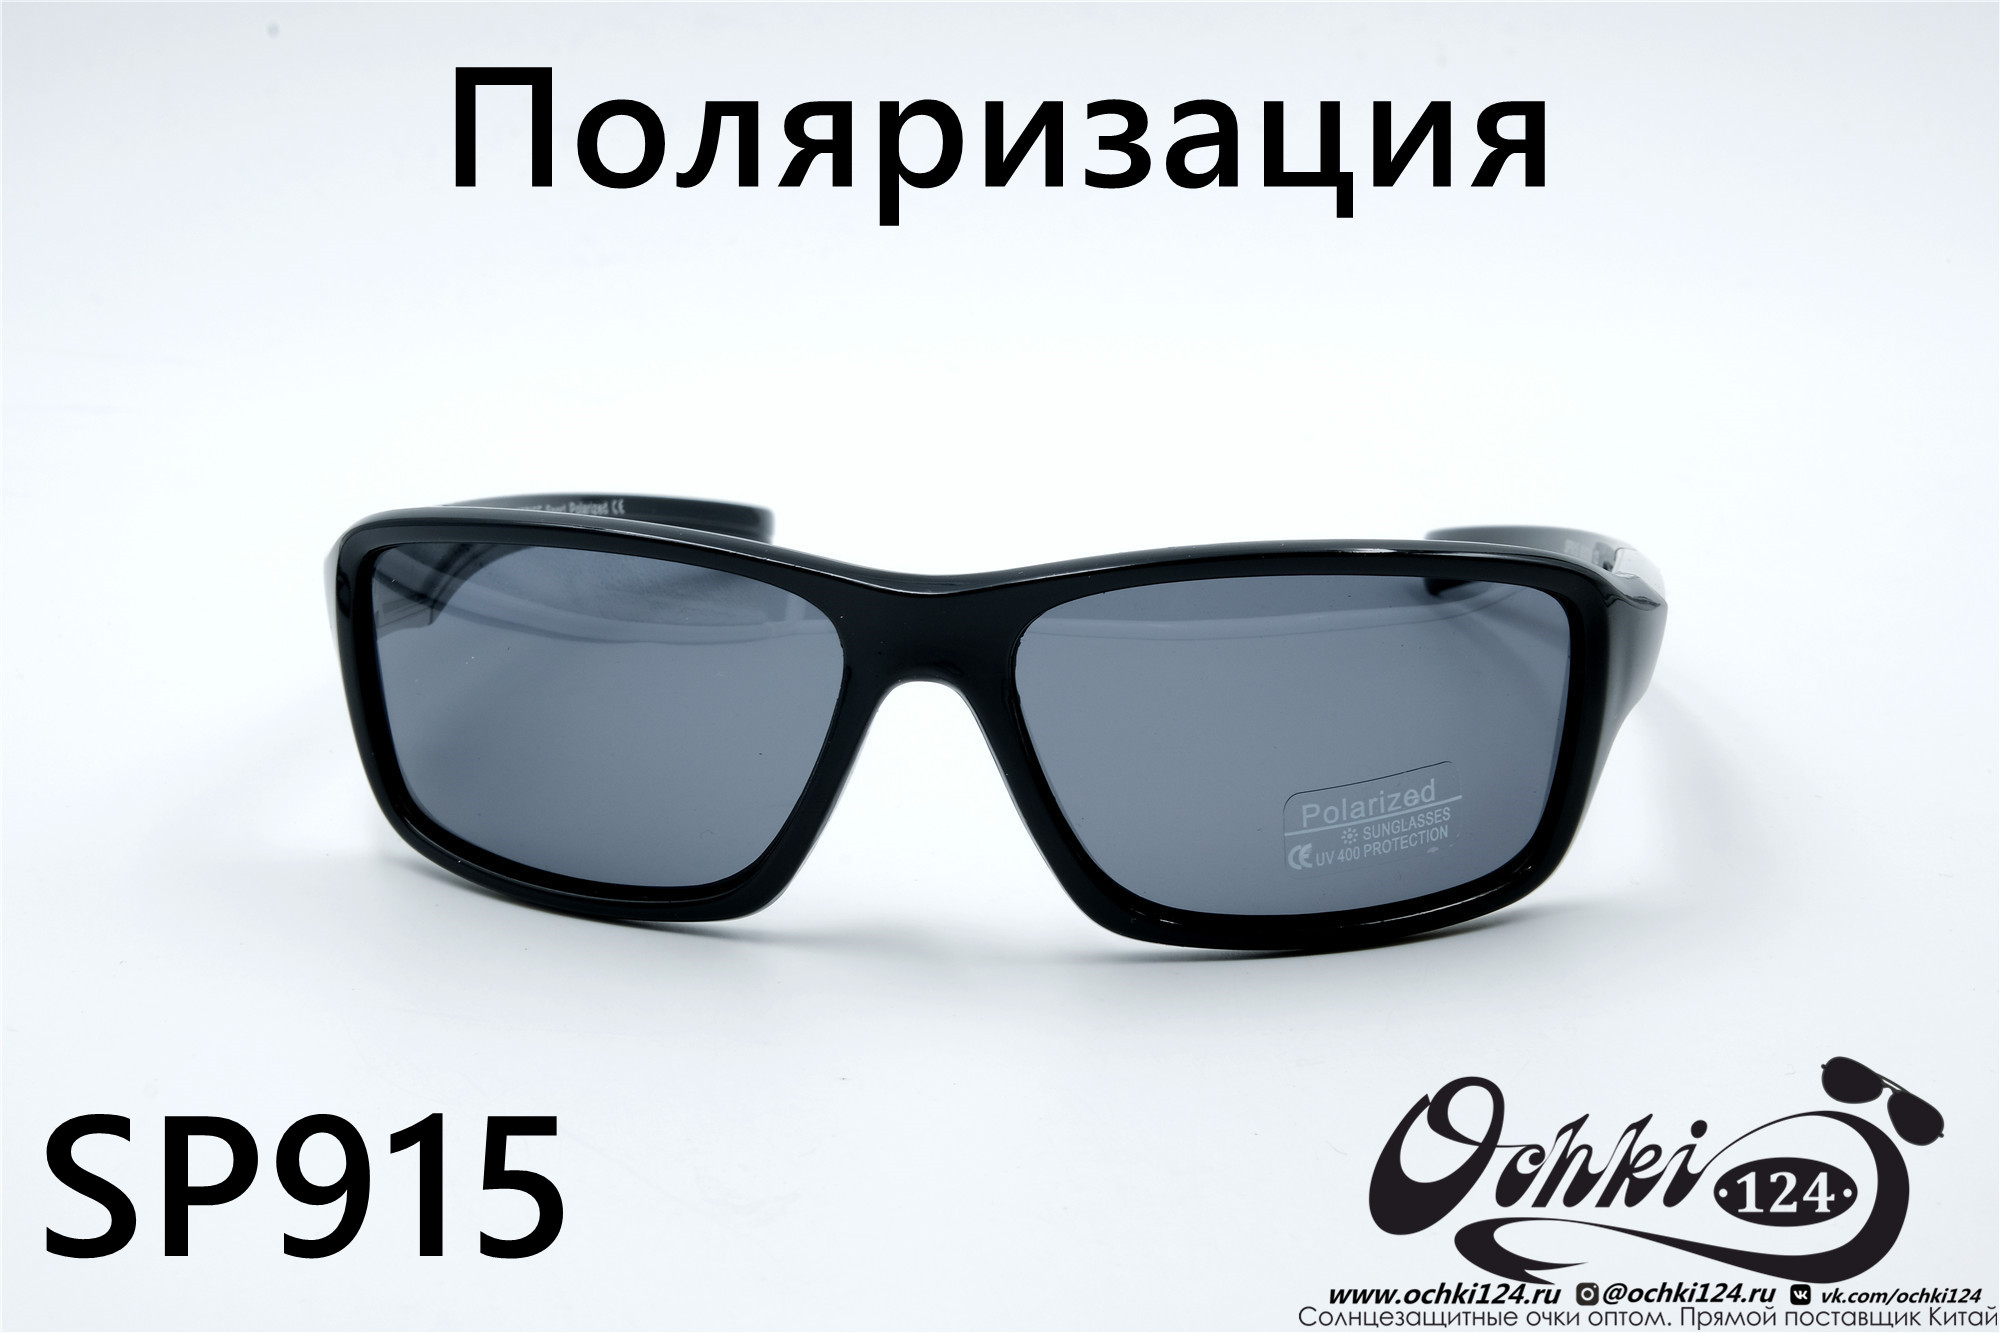  Солнцезащитные очки картинка 2022 Мужские Поляризованные Спорт Materice SP915-5 